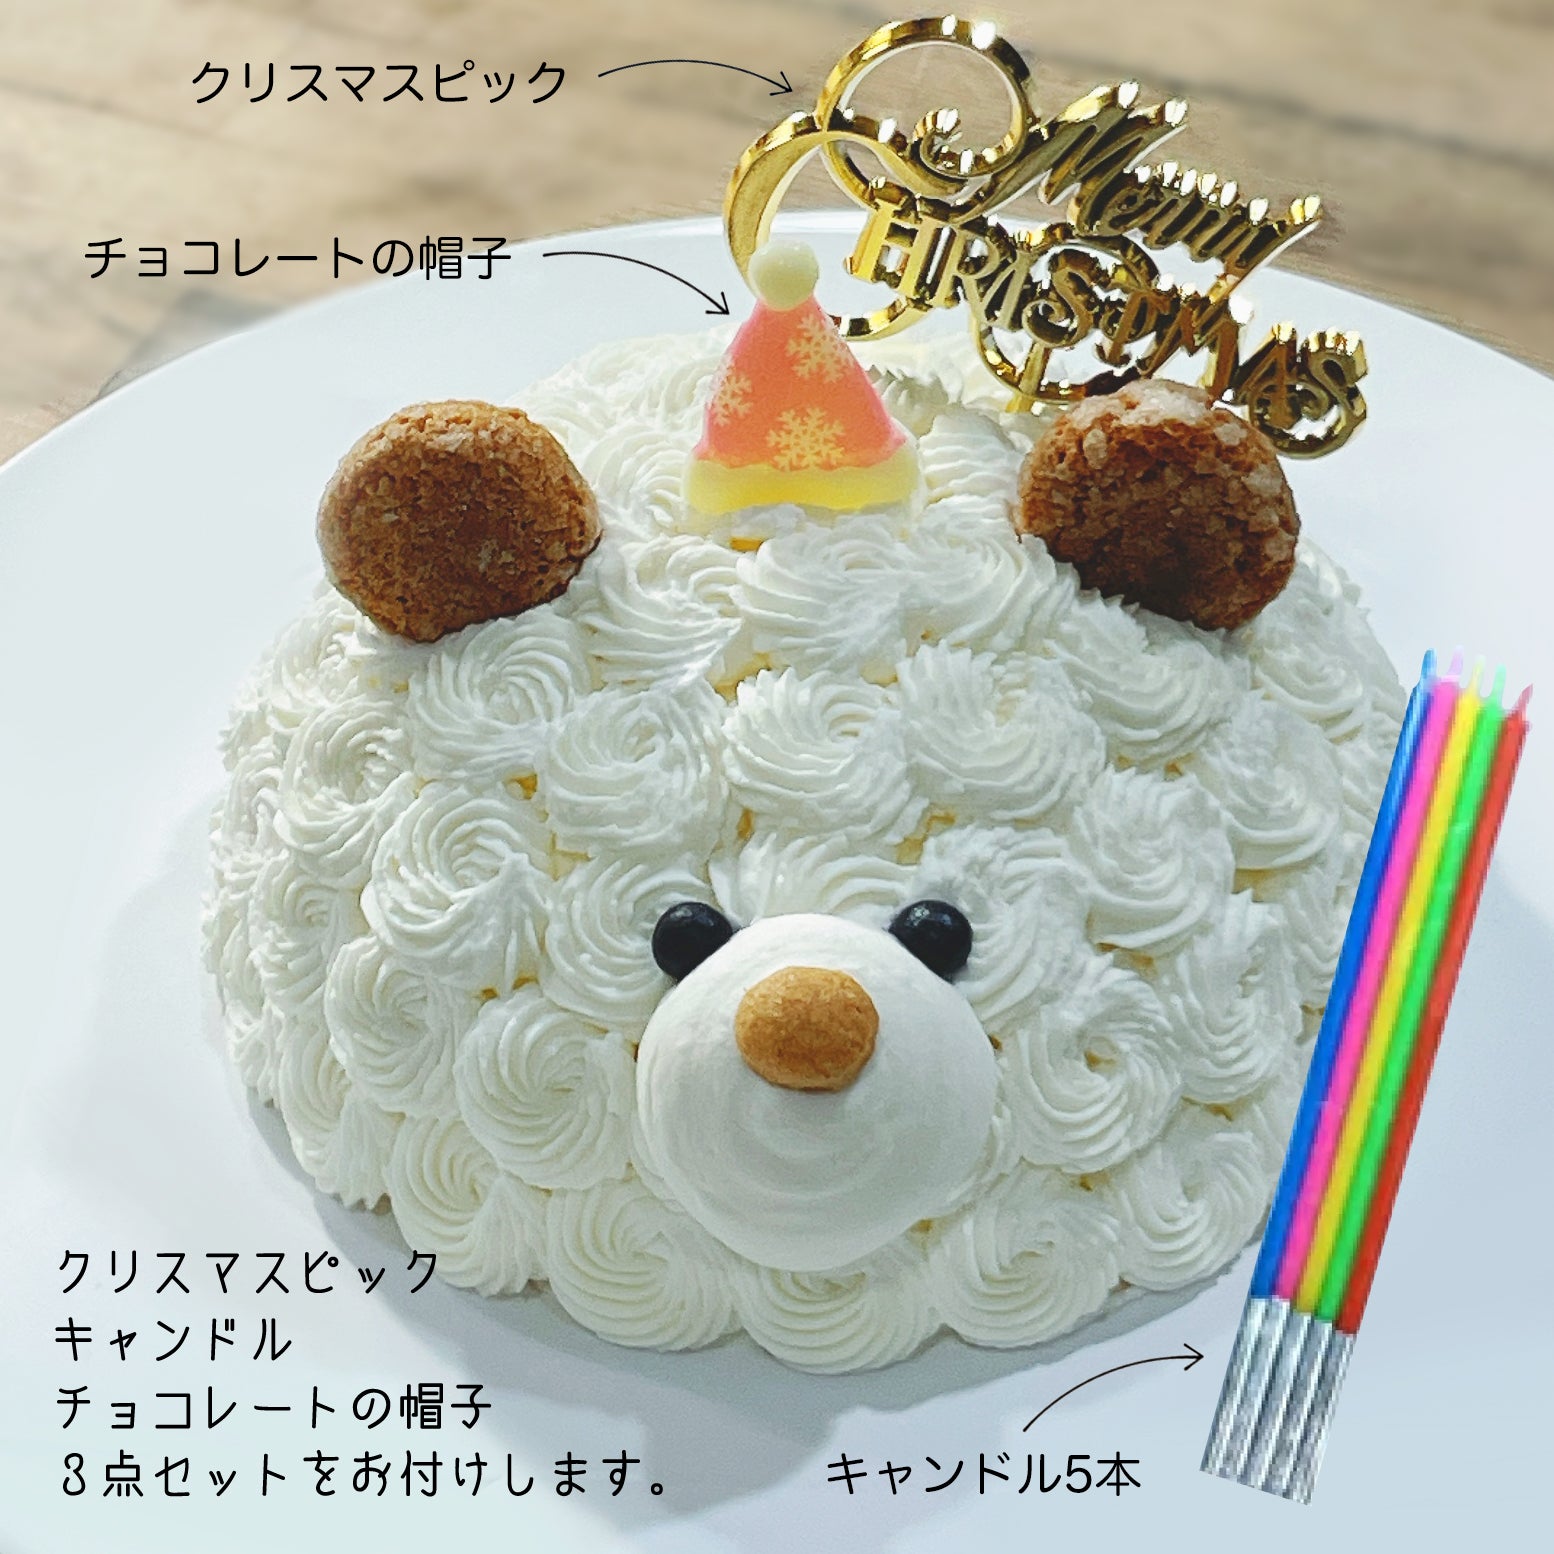 セミオーダー1 (4名様用) – 誕生日ケーキのお店・エスキィス